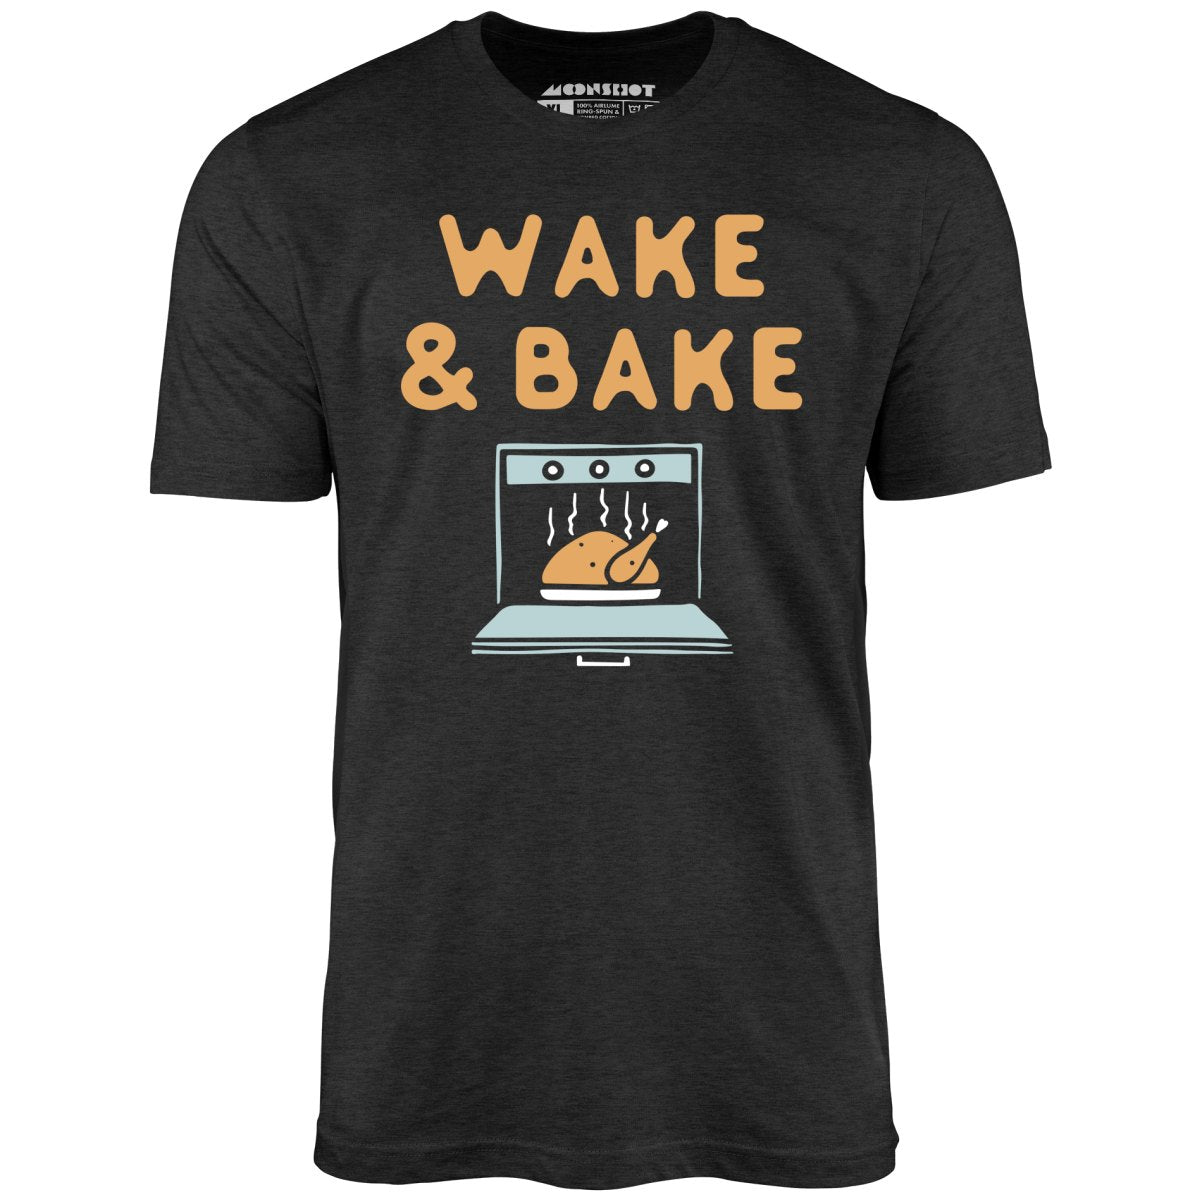 Wake & Bake - Unisex T-Shirt